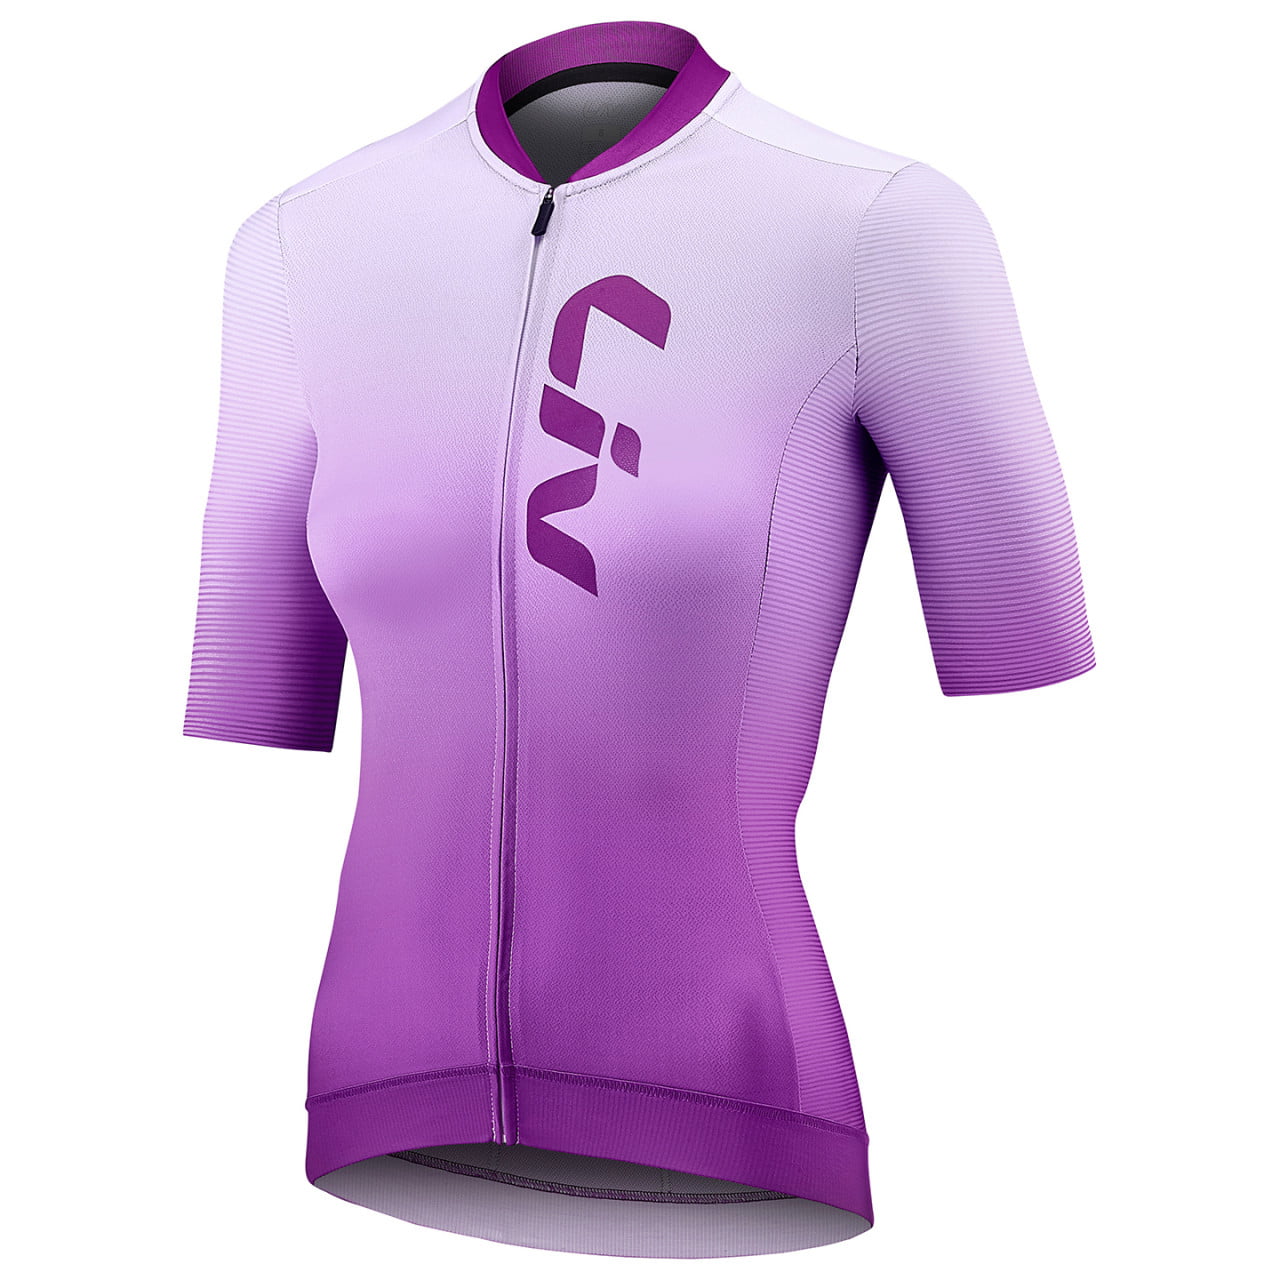 Factory Direct LIV Cycling Wear Set Women Short Sleeve Bike Shirts